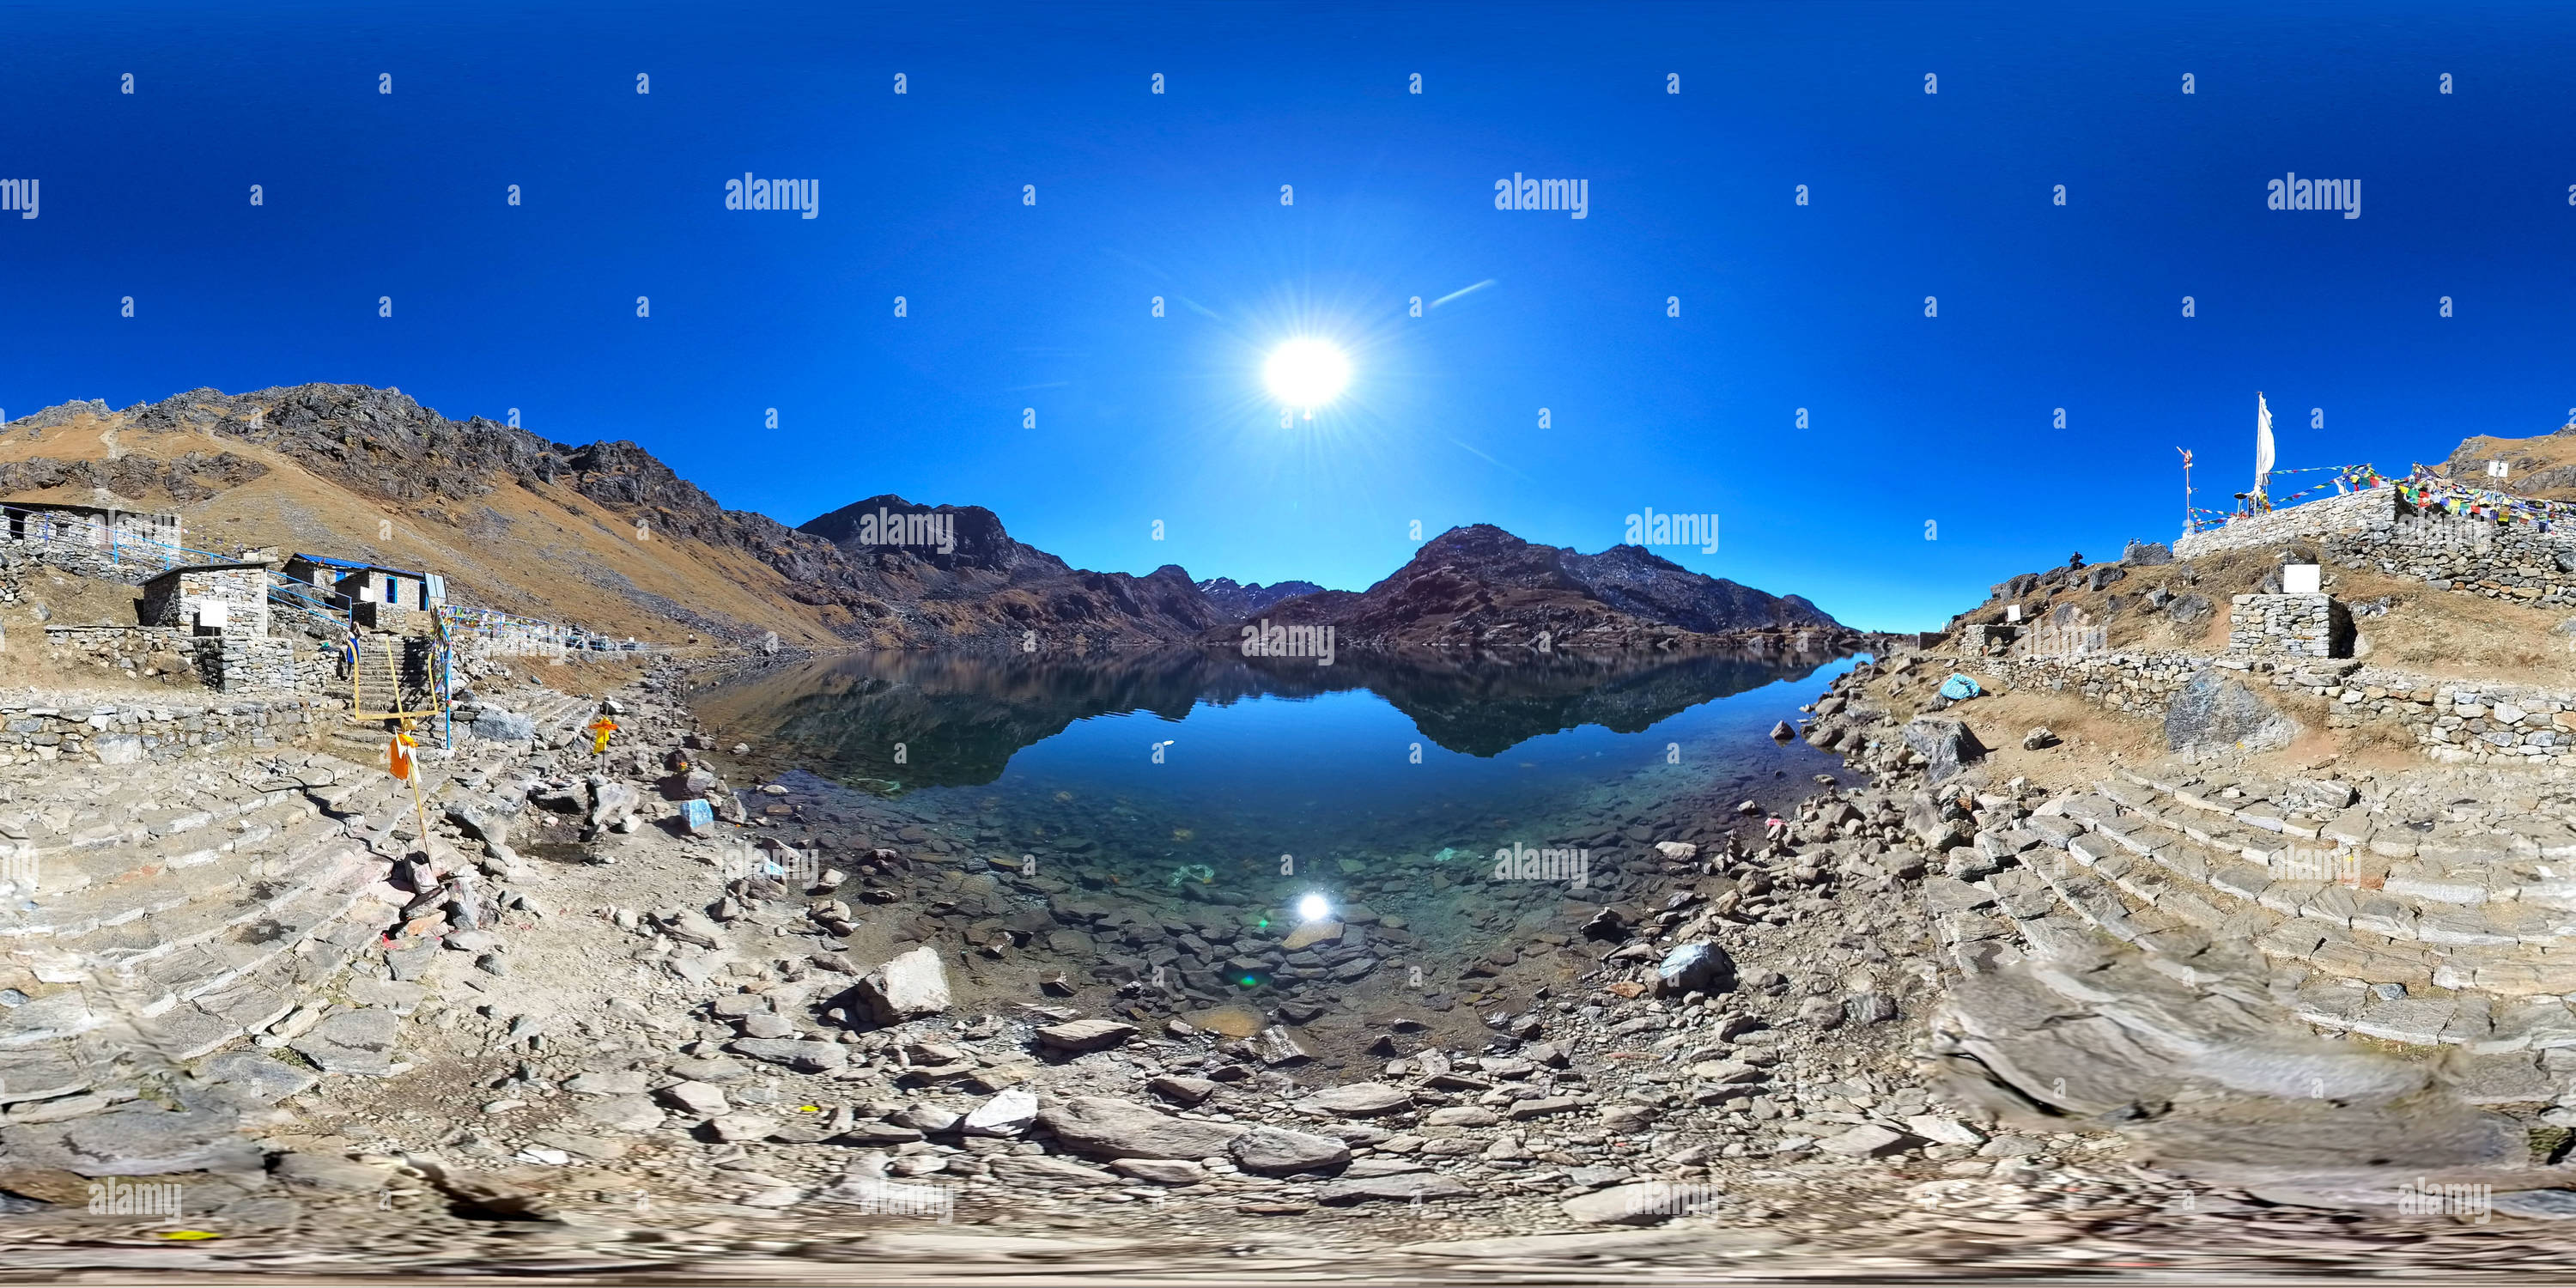 Visualizzazione panoramica a 360 gradi di Lago Gosaikunda (4380 m) a Rasuwa, Nepal